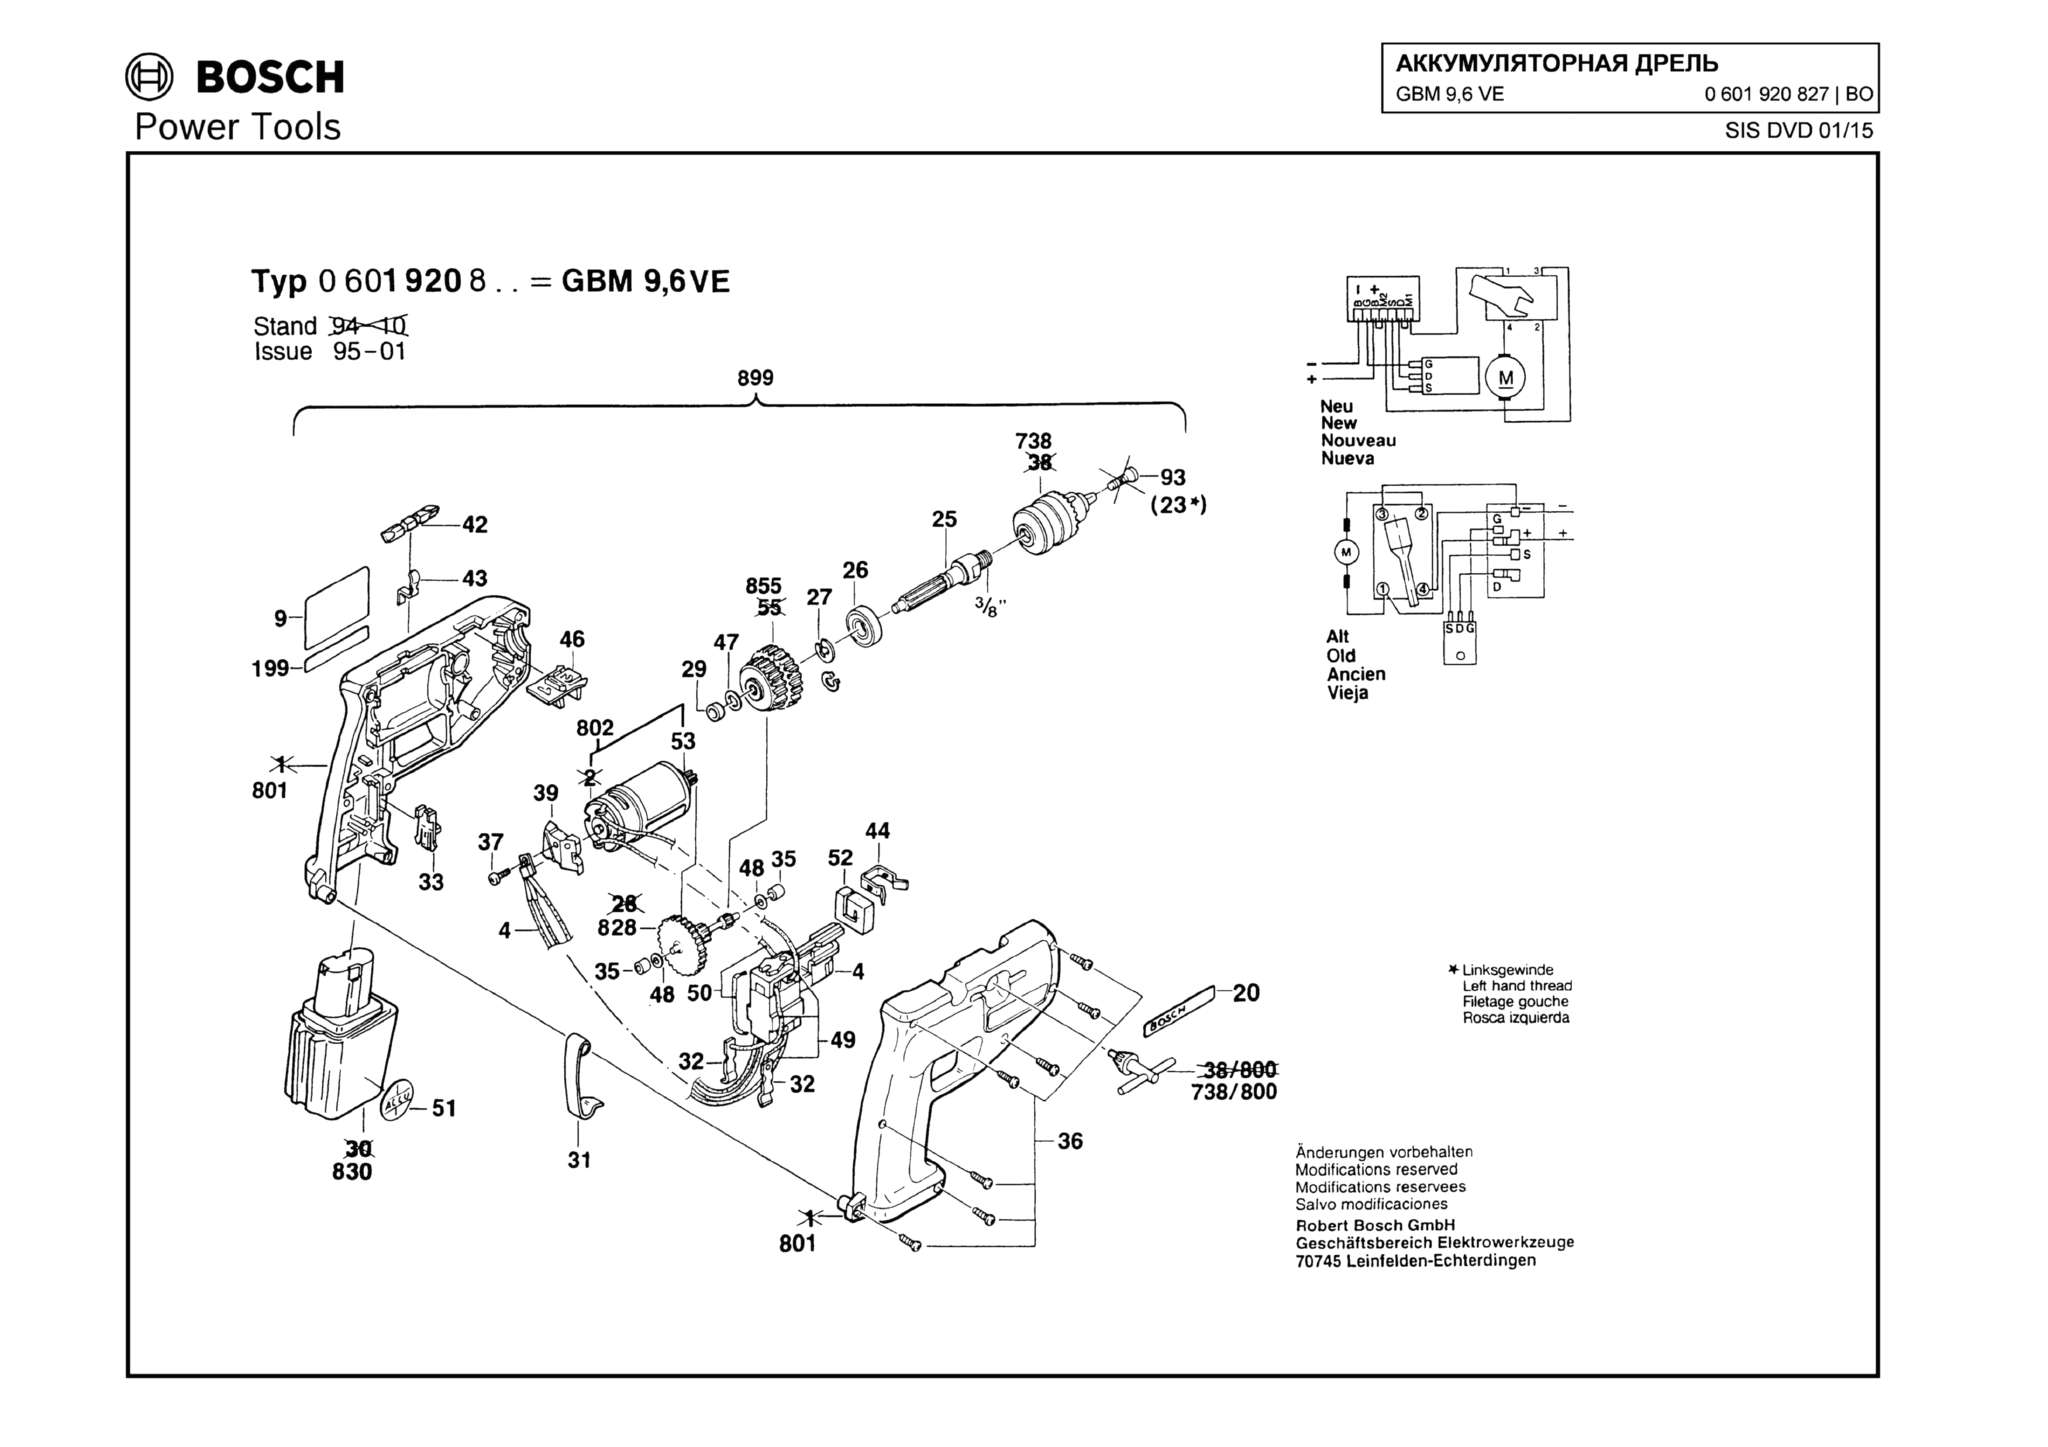 Запчасти, схема и деталировка Bosch GBM 9,6 VE (ТИП 0601920827)